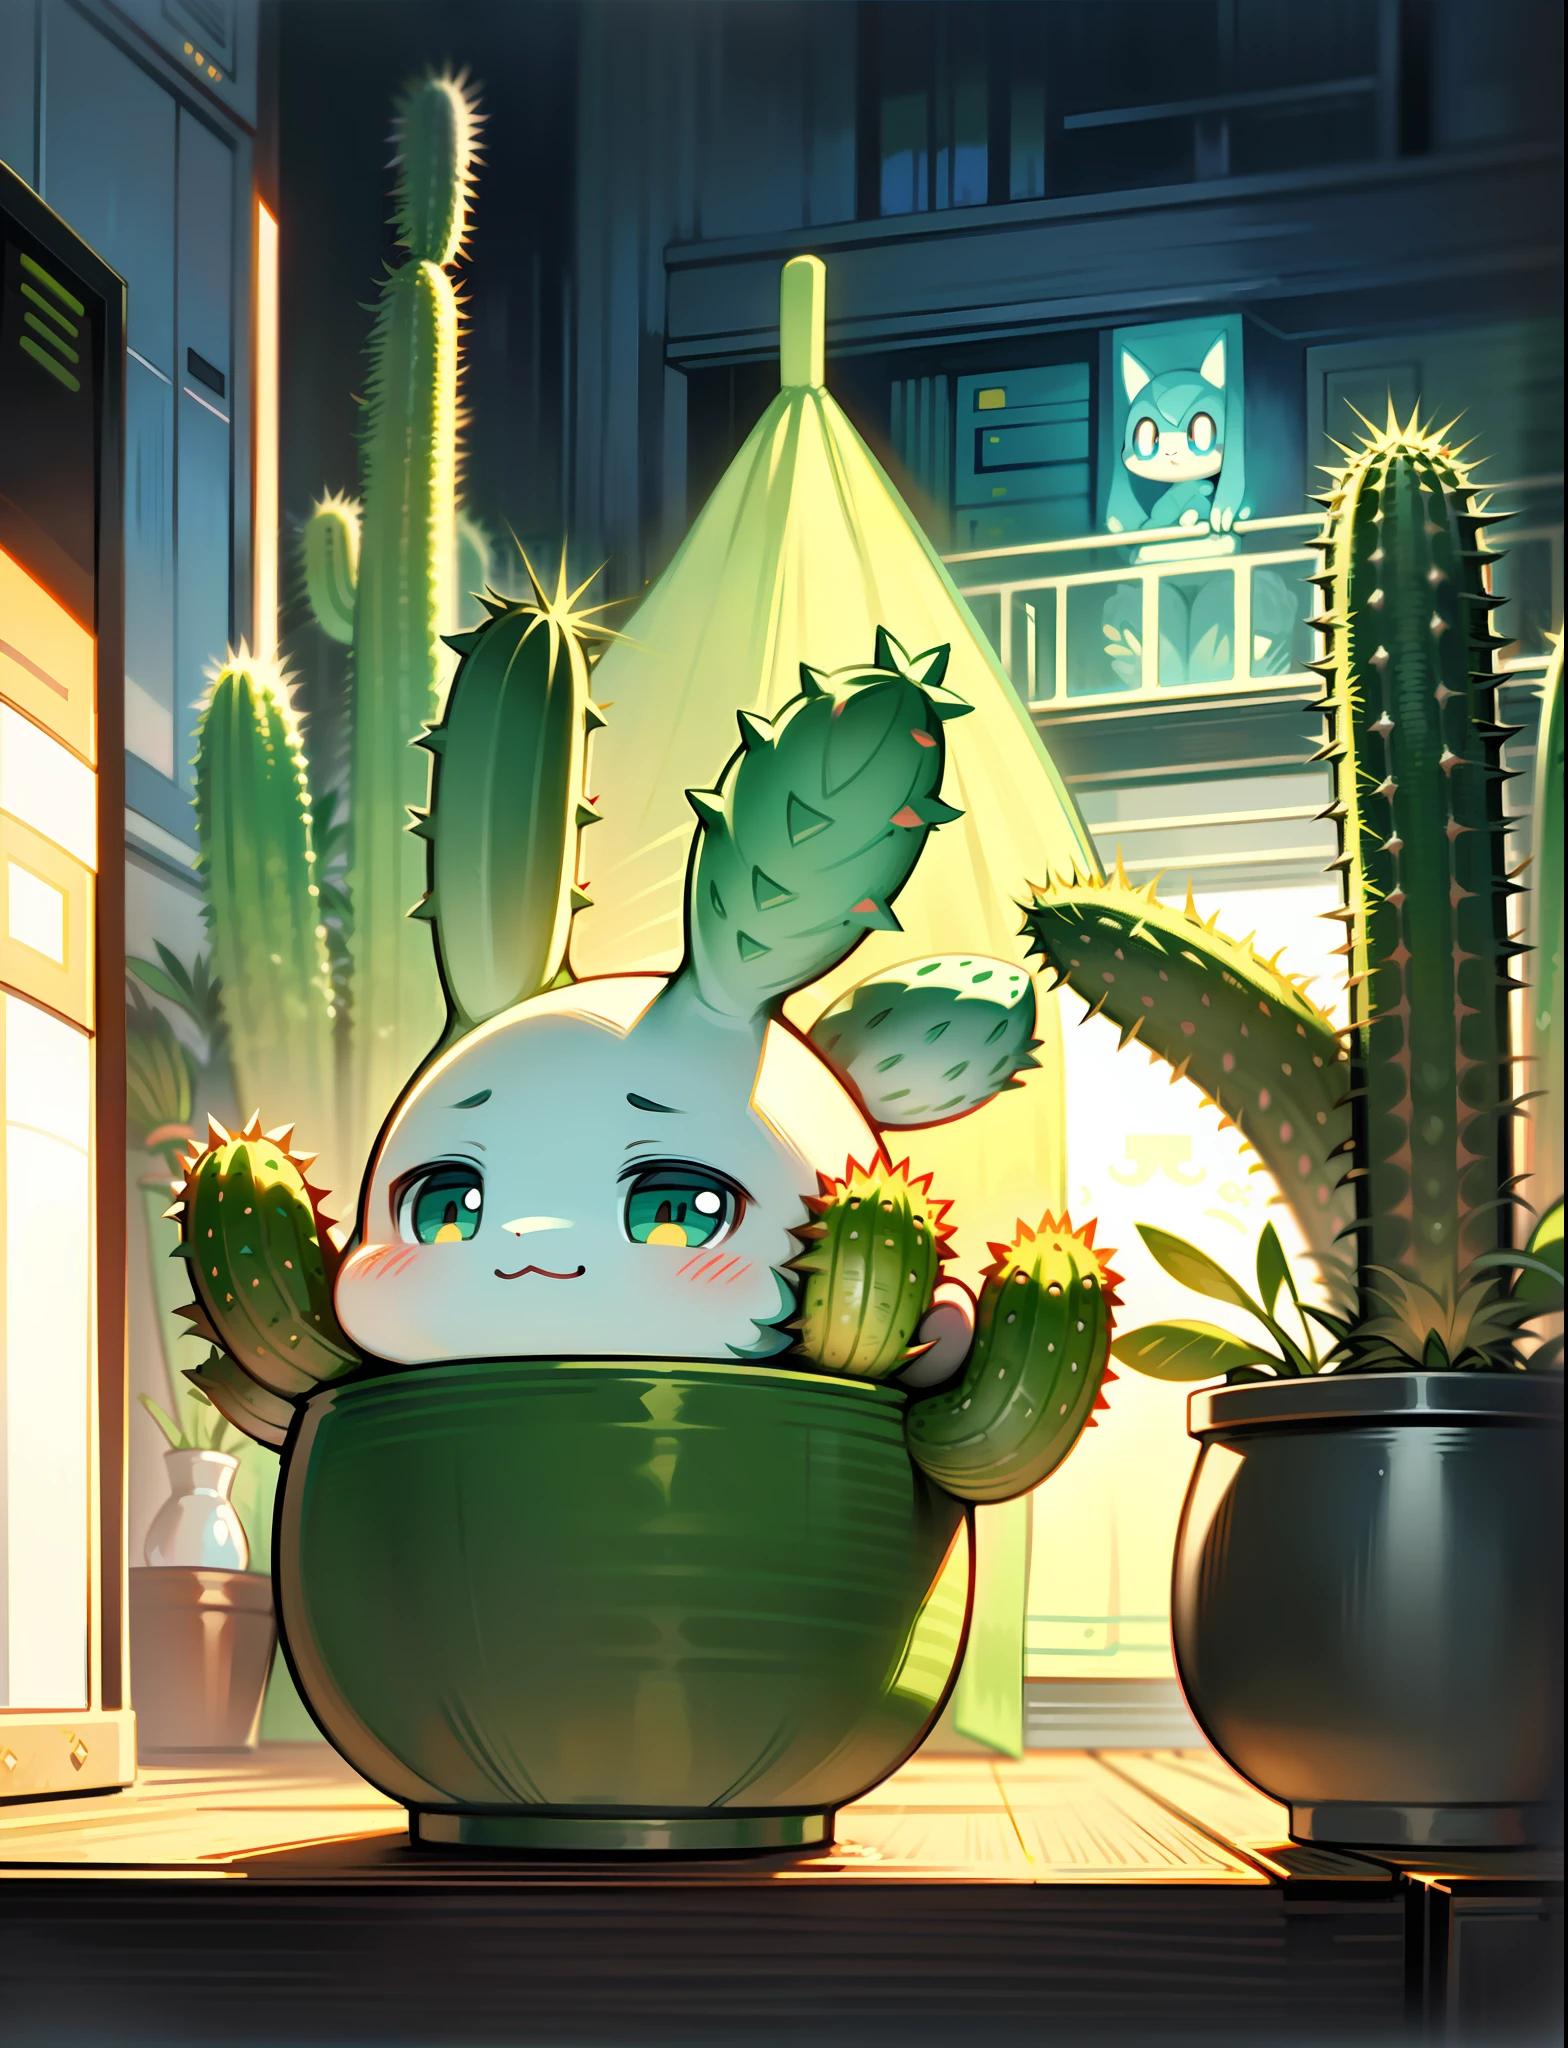 Un cactus de dibujos animados, cactus antropomórfico, lindo caricaturesco, hermosa ilustración, Arte digital detallado, lindo arte, Lindo estilo Pokémon, adorable, sosteniendo un cactus